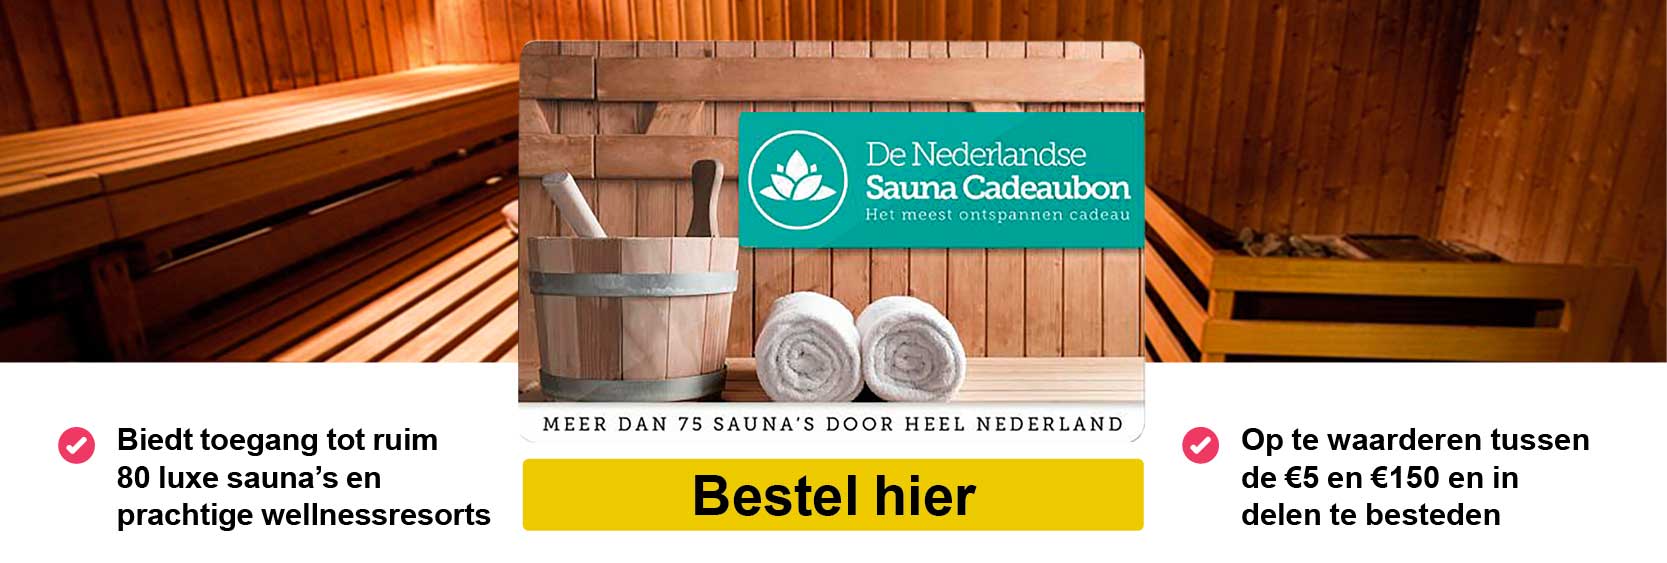 Erfgenaam Ijsbeer hoek De Nederlandse Sauna Cadeaubon|Sauna Cadeaukaarten | Alle Giftcards